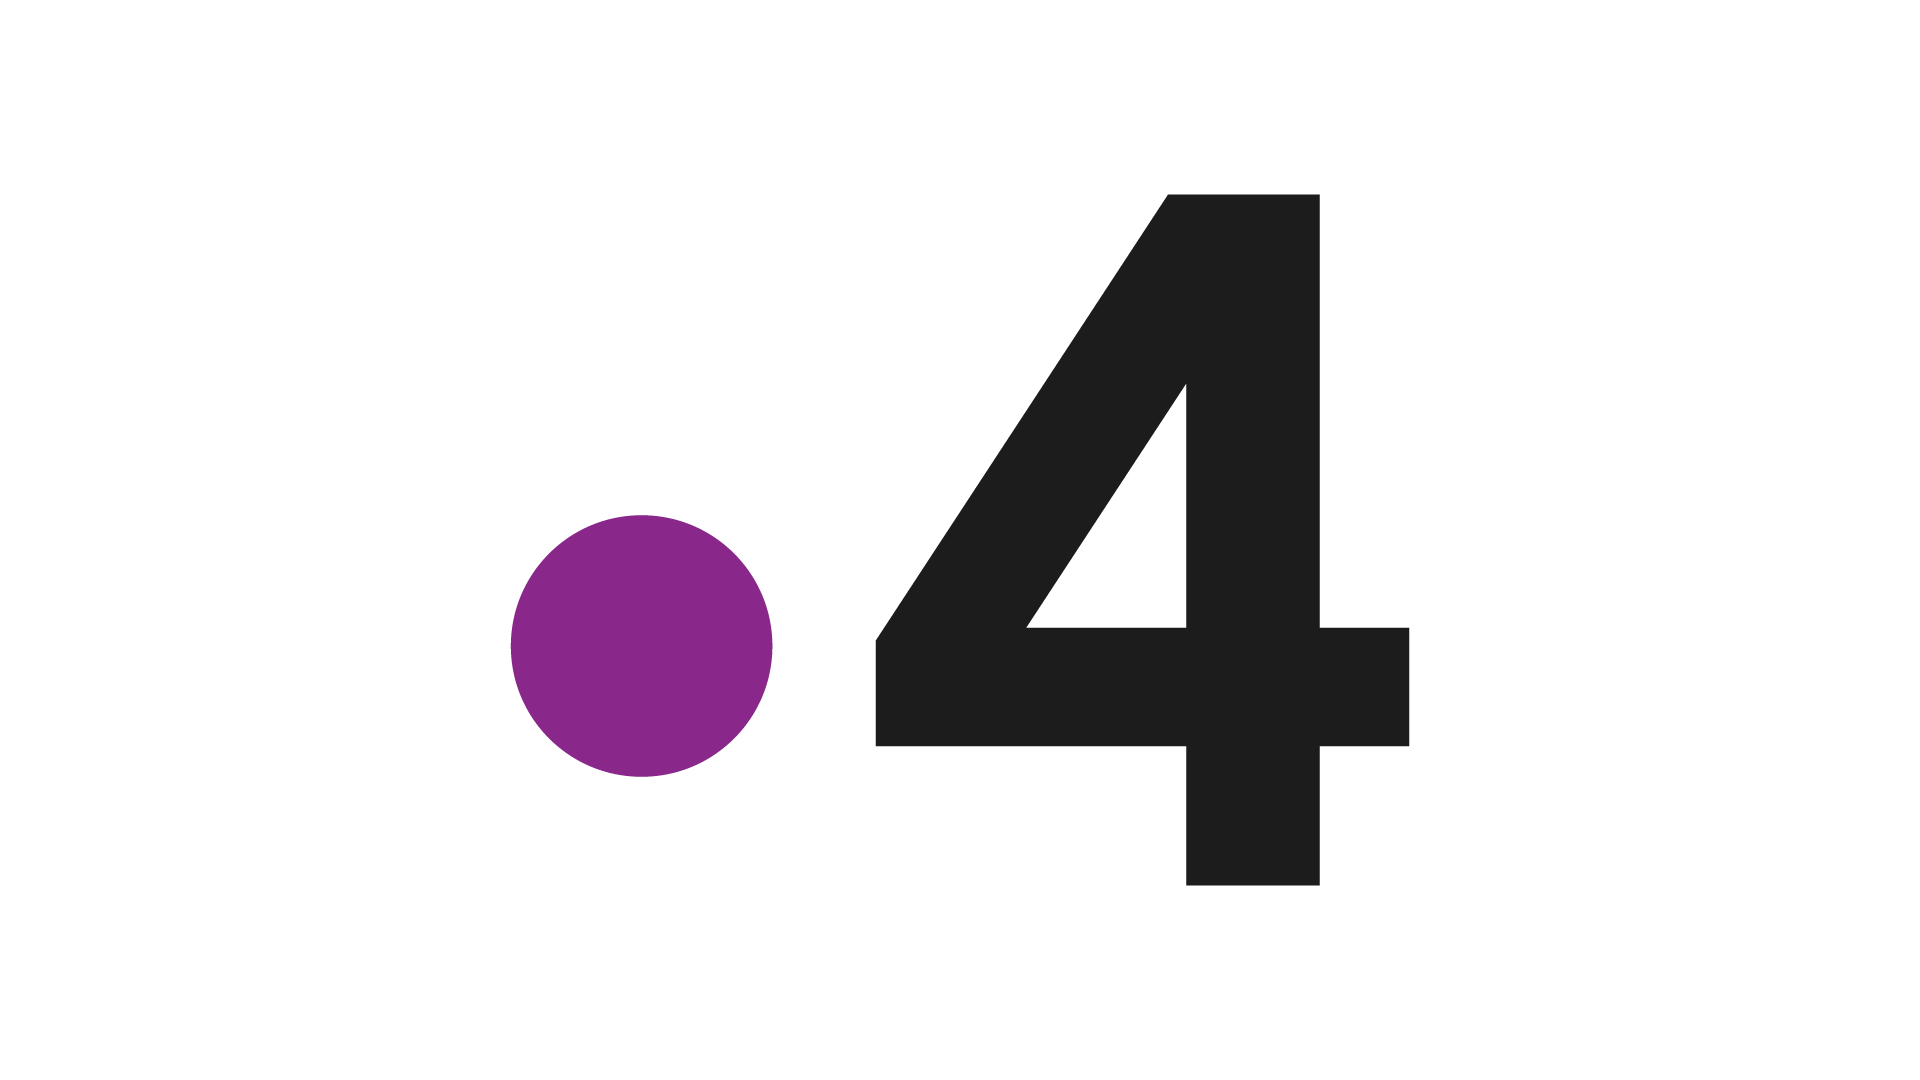 Четыре прямой эфир. France 4 канал. Canal + ТВ Франция. Лого Франс 4. Фанк Франции лого.